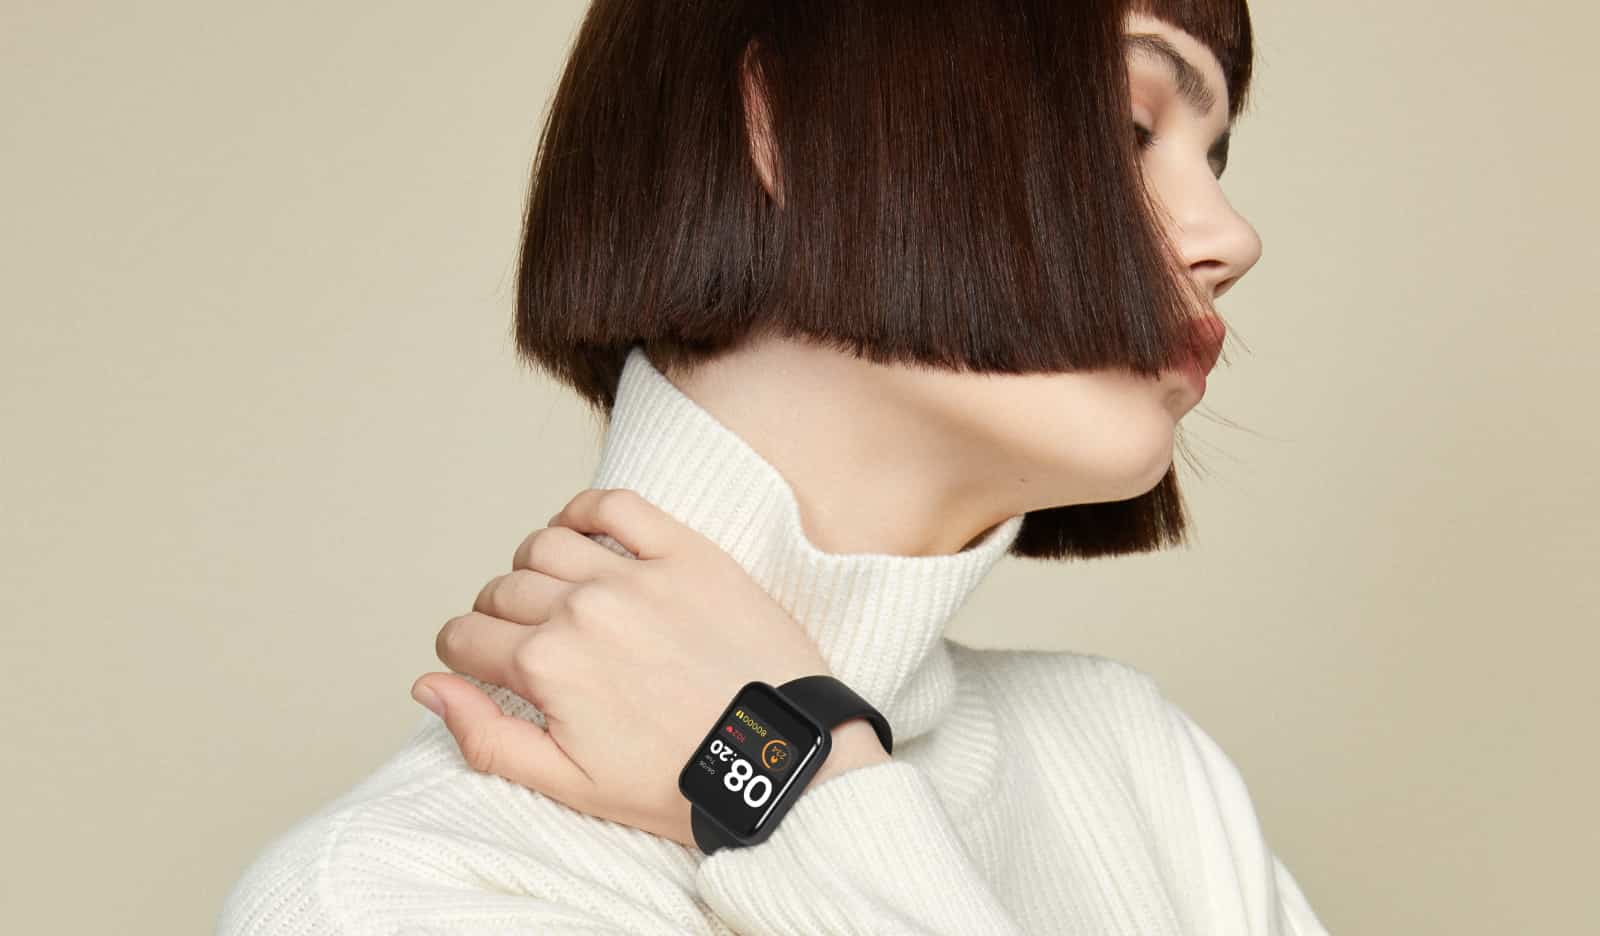 Xiaomi Mi Watch Bhr4550gl